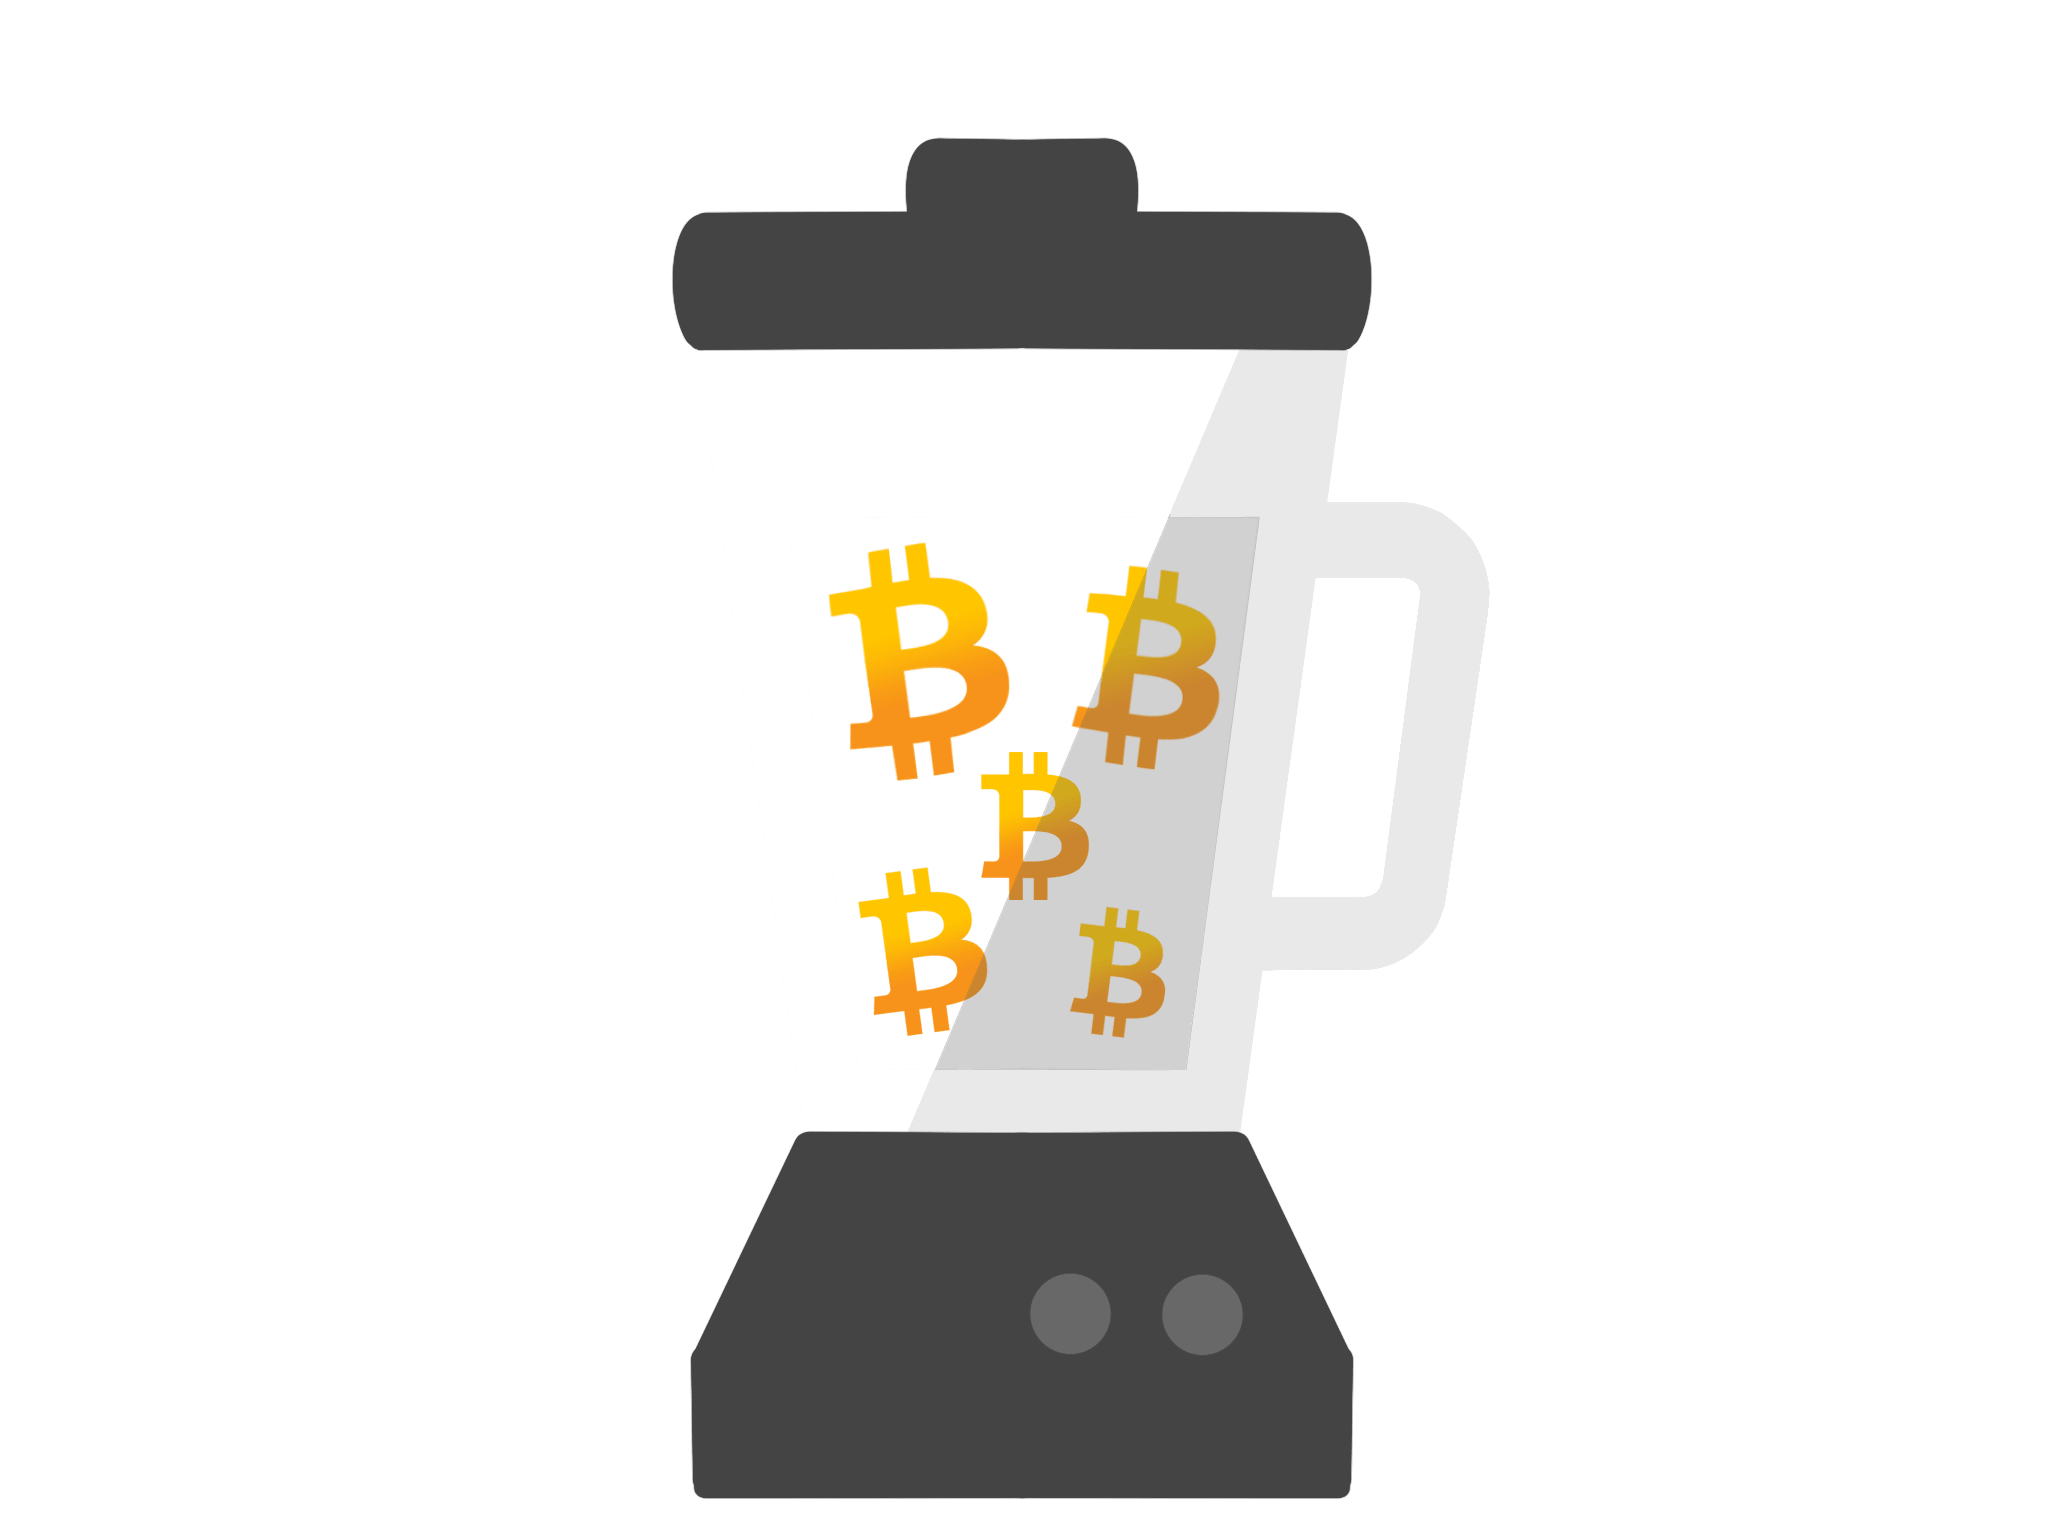 bitcoin mixer